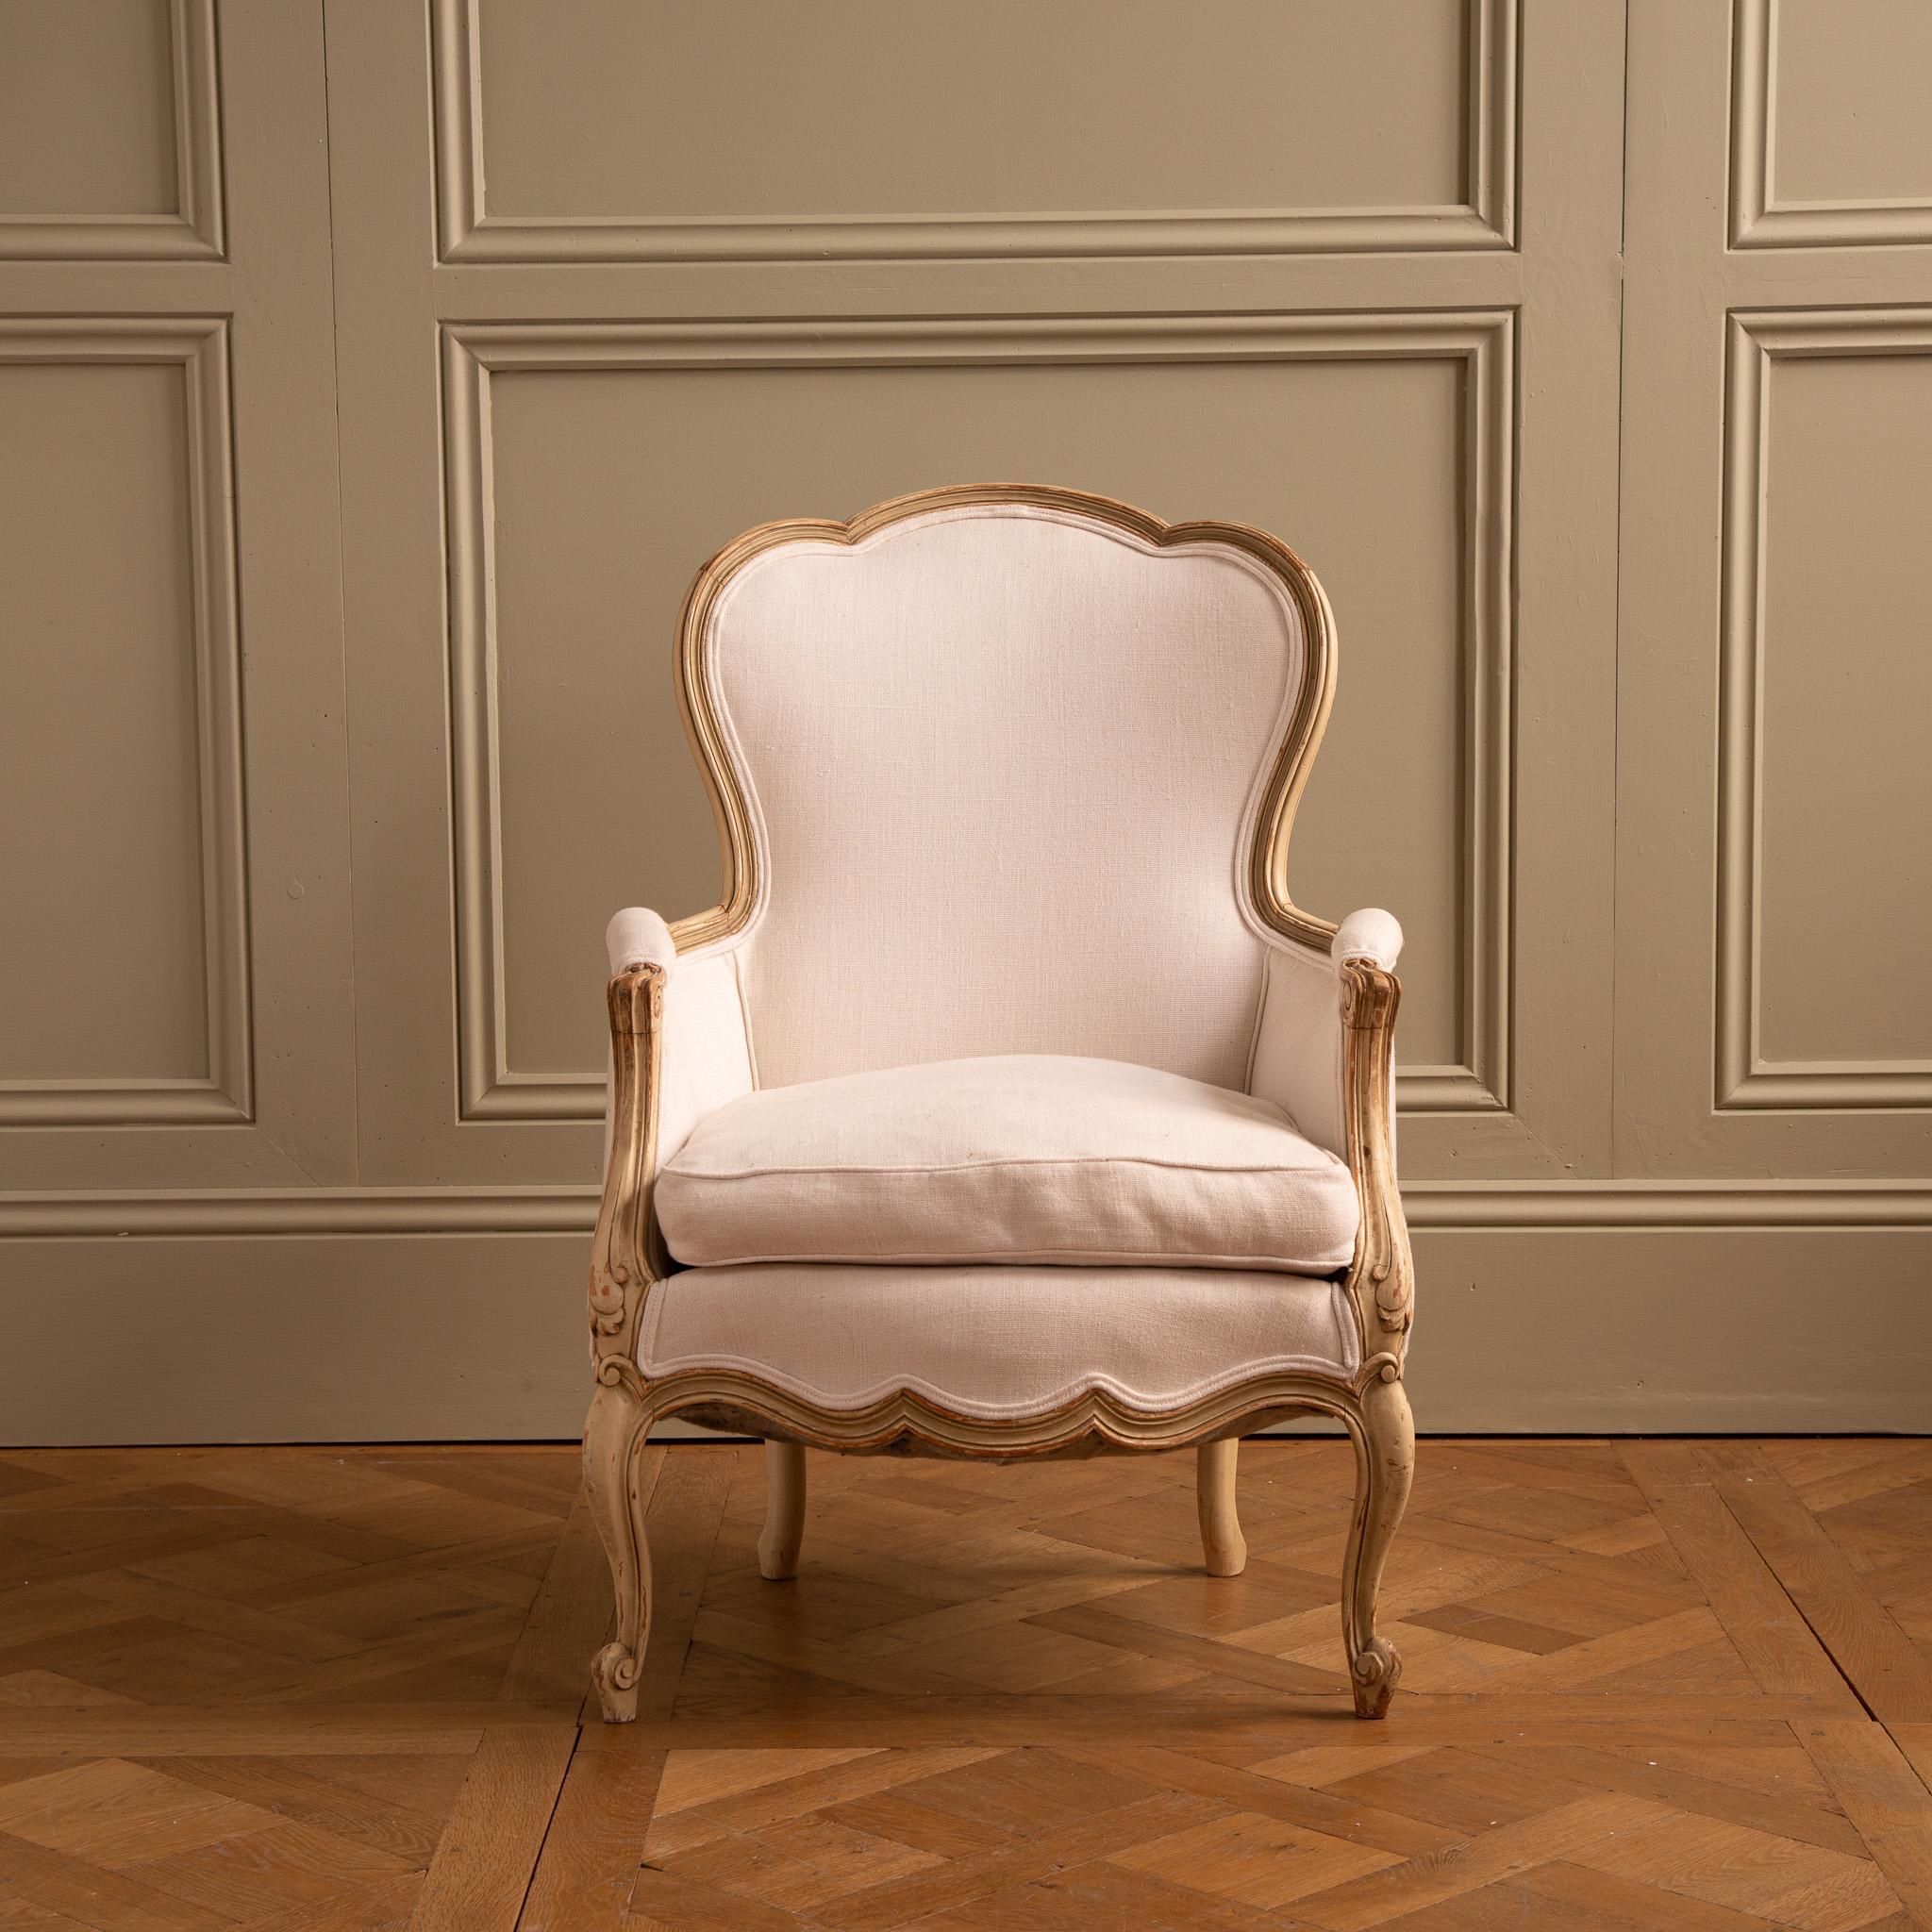 Ein schwedischer Sessel im gustavianischen Stil aus den frühen 1900er Jahren, aus massivem Buchenholz geschnitzt und von Hand in einem warmen Weiß gestrichen, das auf natürliche Weise gealtert ist, so dass ein Teil des darunter liegenden Holzes